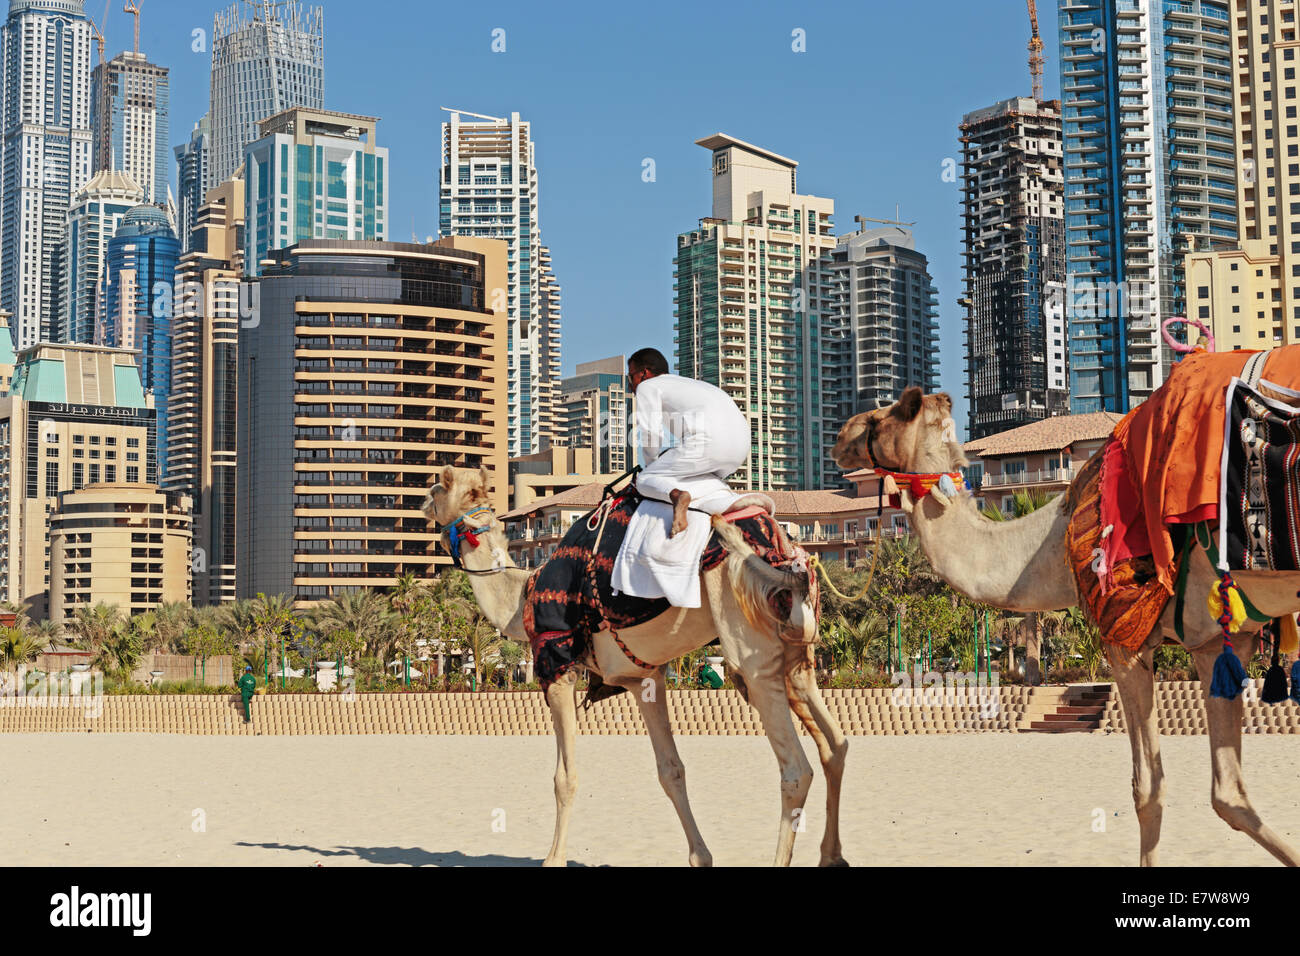 DUBAI, EMIRATOS ÁRABES UNIDOS - 11 de noviembre: edificios altos y camello en la playa en Dubai Marina, el 11 de noviembre de 2013, Dubai, EAU. En el c Foto de stock